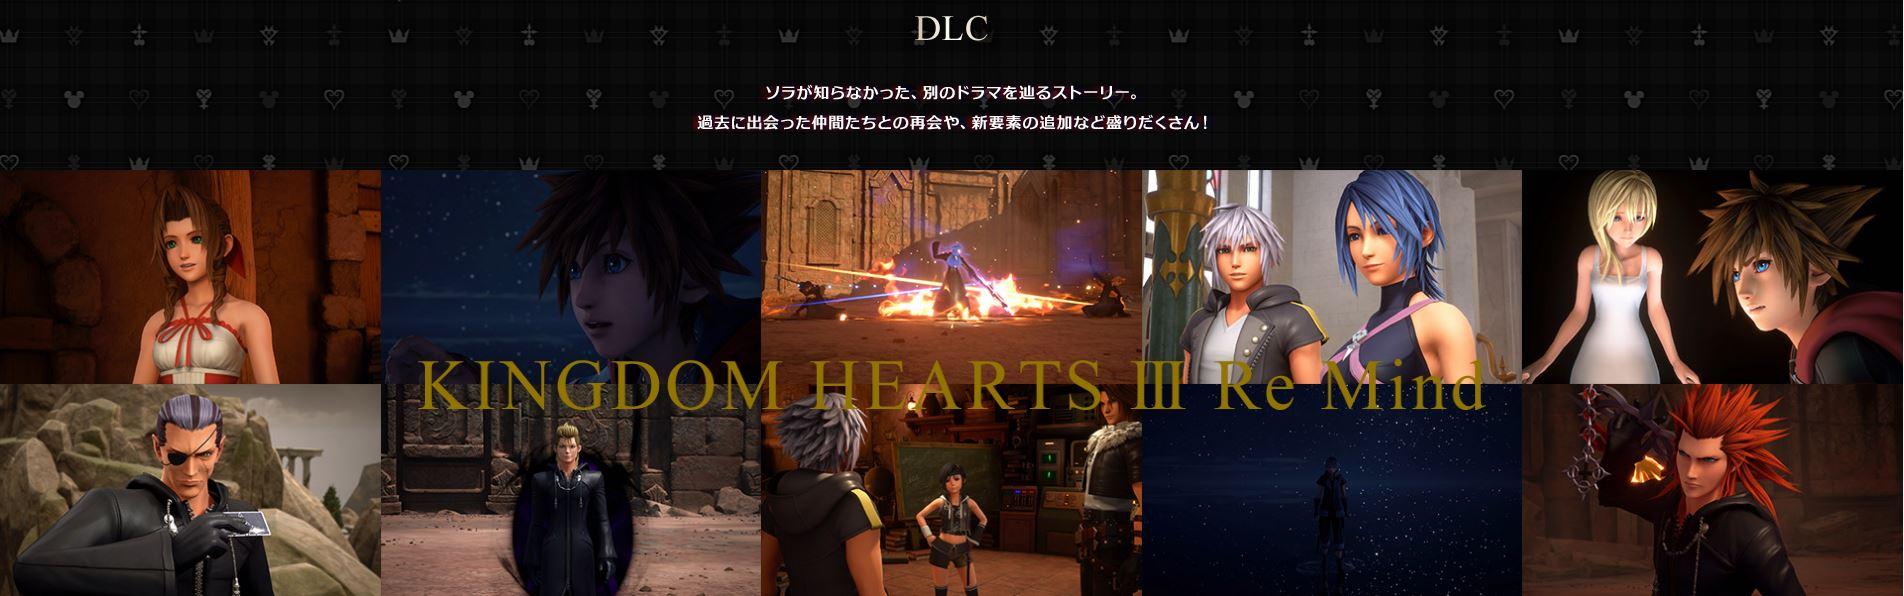 《王国之心3》DLC拍照模式展示可设定战斗条件